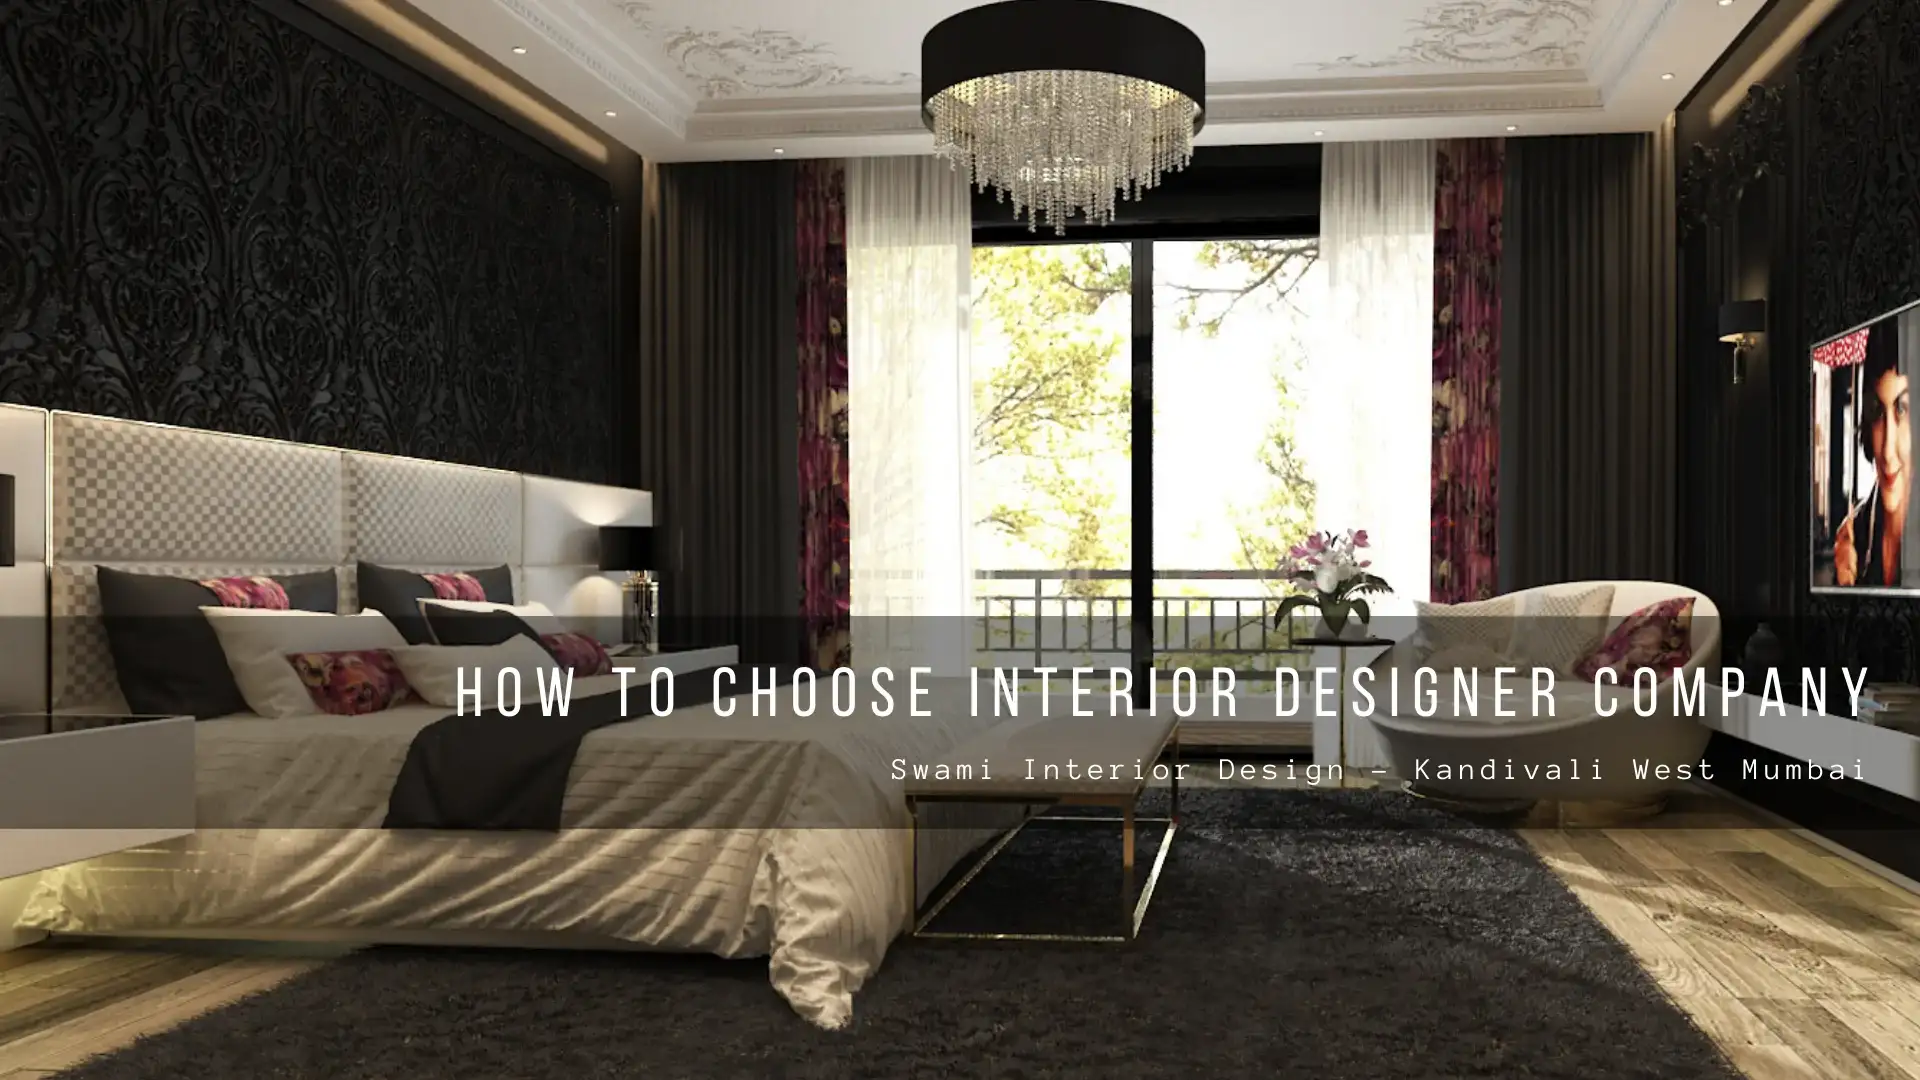 How to choose interior designer company blog